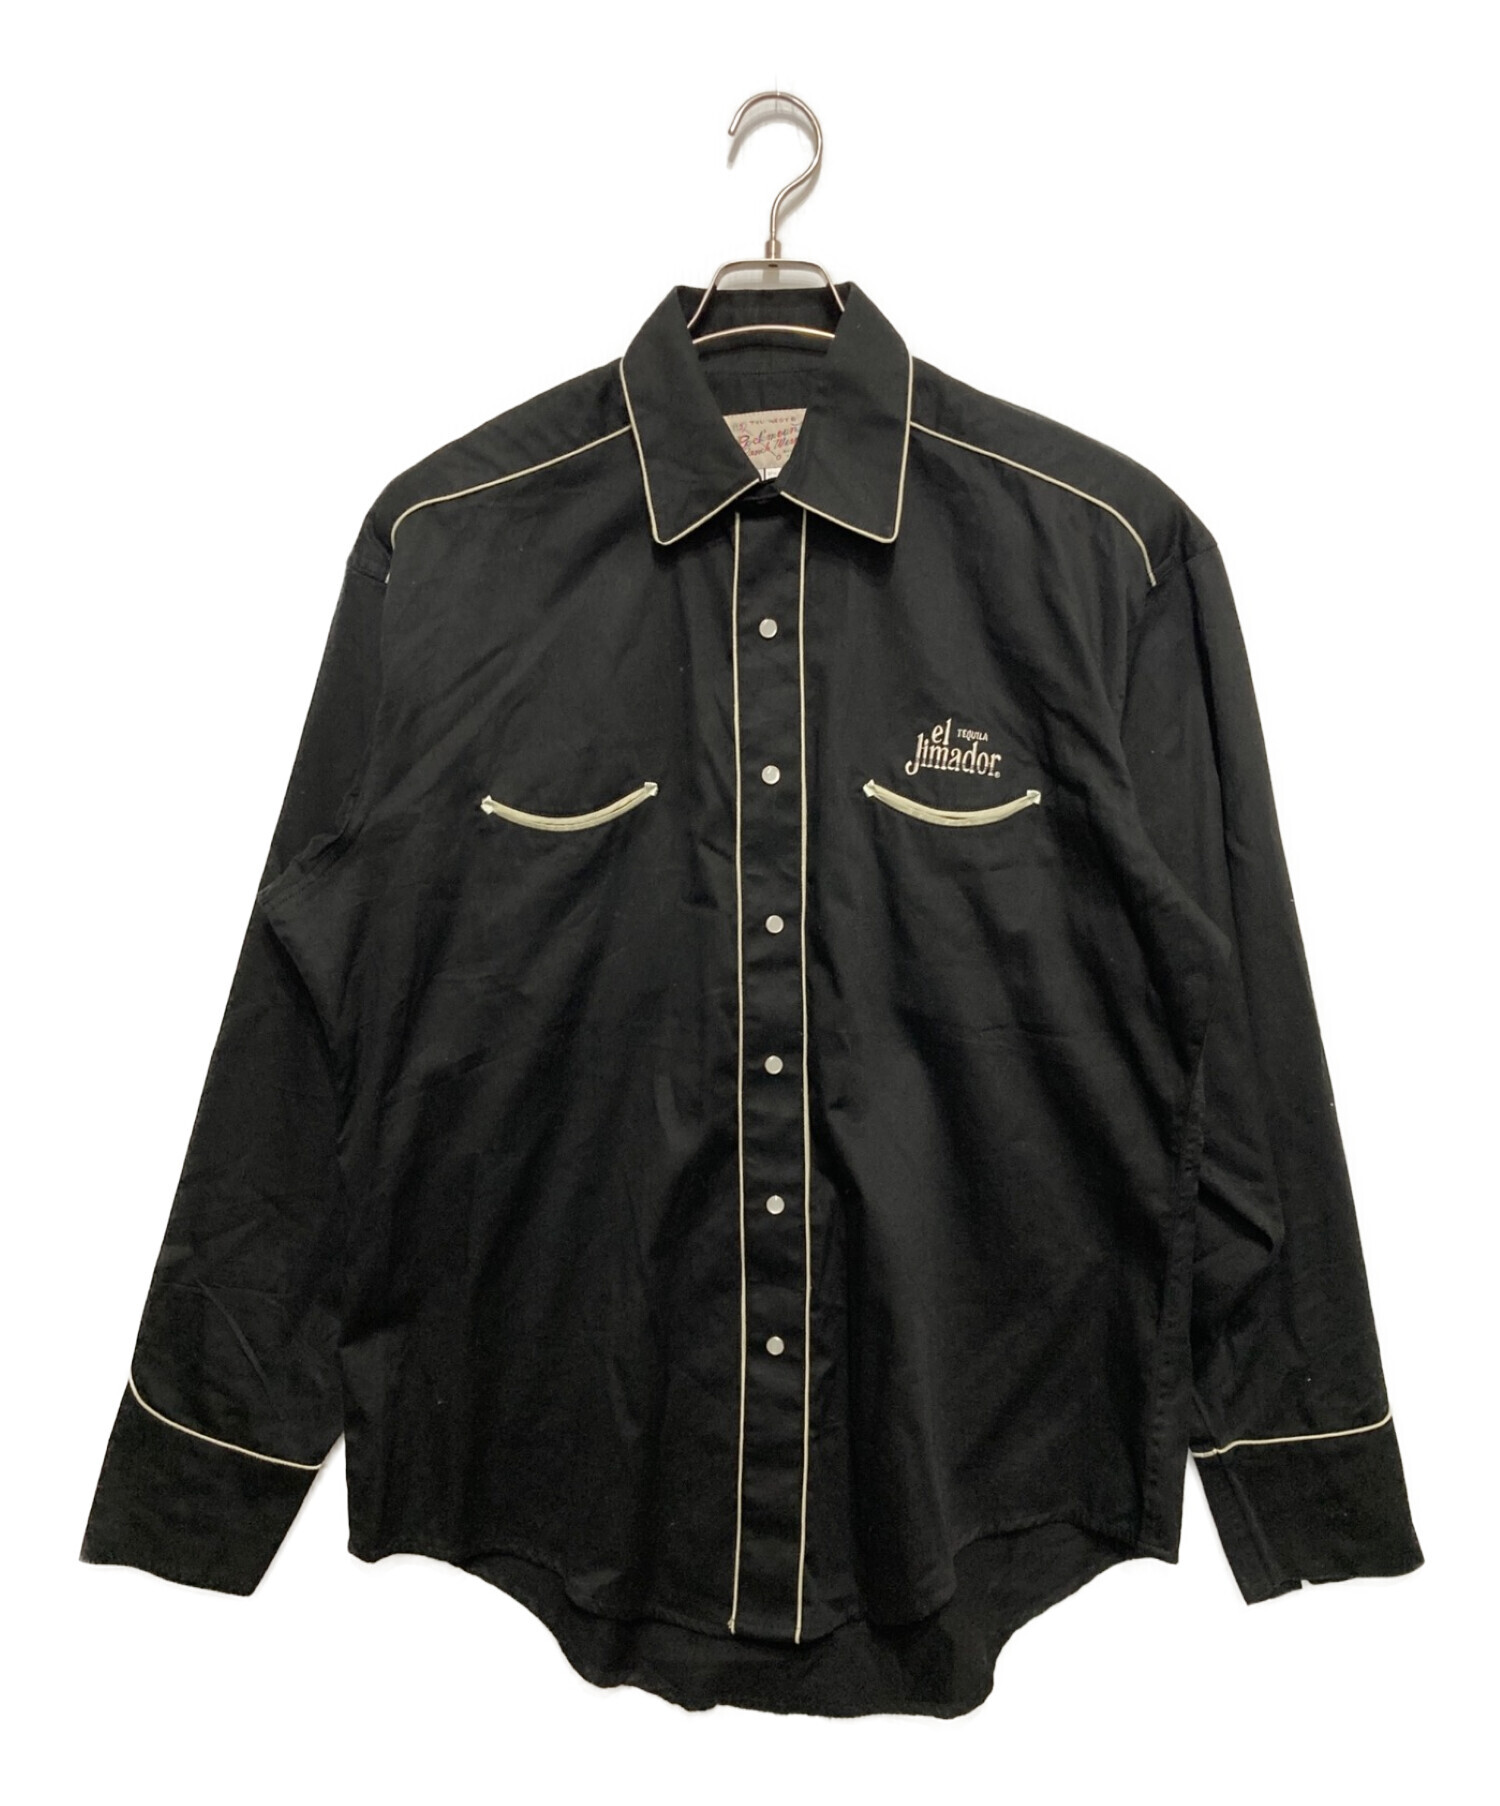 カラーブラックグレー【超レア】Rockmount ウエスタンシャツジャケット